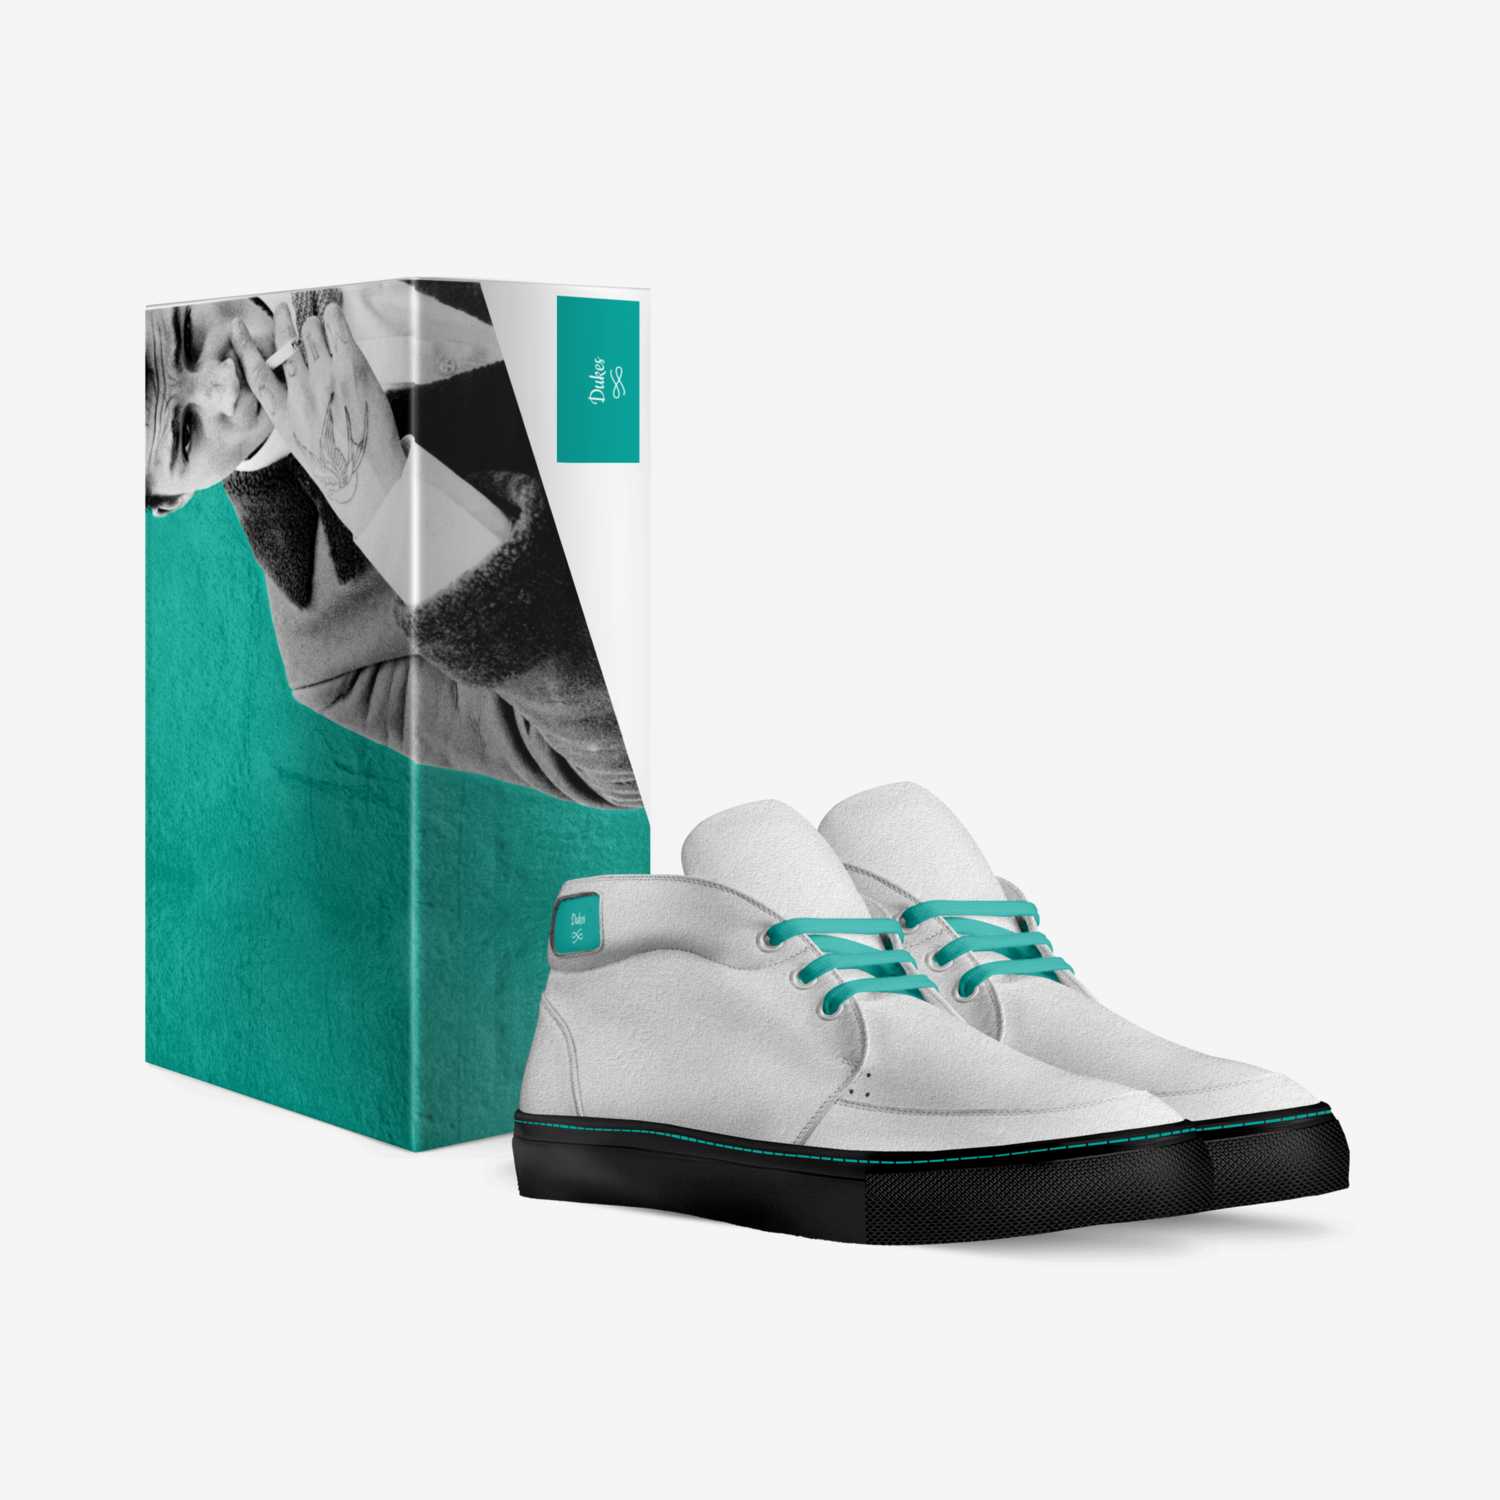 Arnett 4 custom made in Italy shoes by Arnett Hankerson | Box view